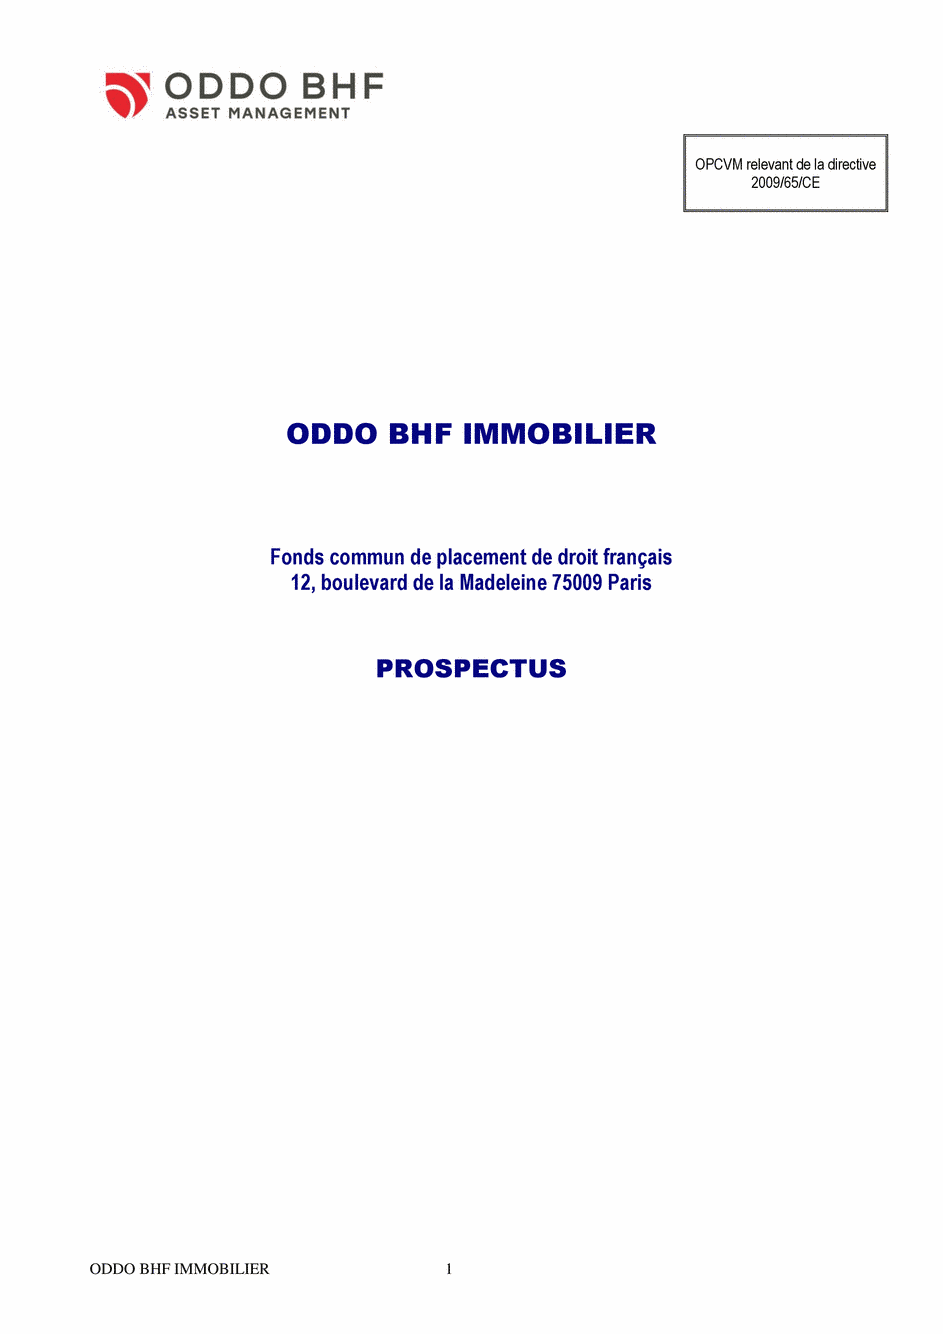 Prospectus ODDO BHF IMMOBILIER DR-EUR - 12/11/2019 - Français